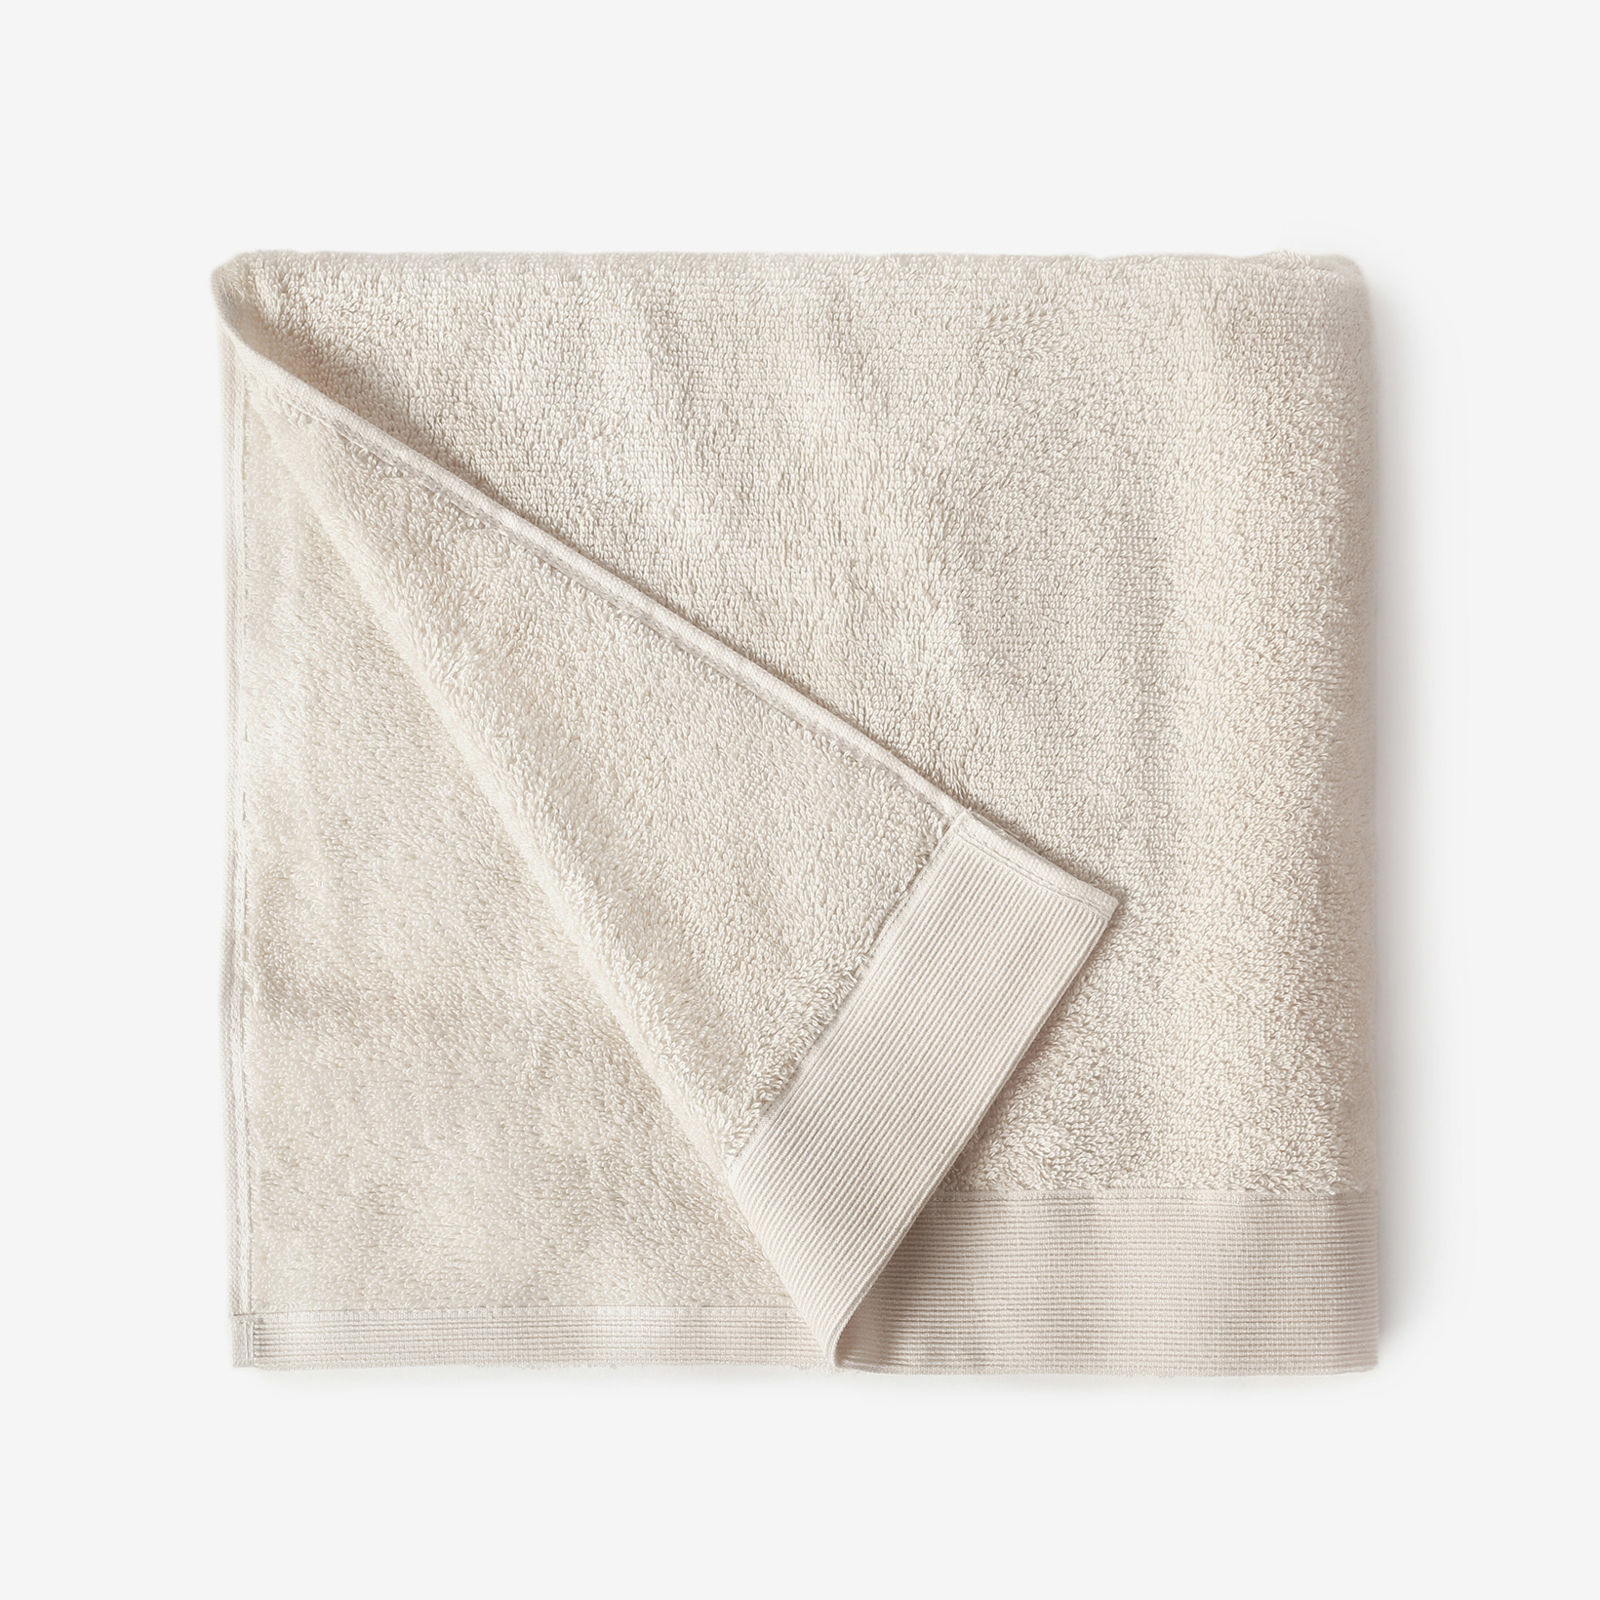 Modalový ručník/osuška s přírodním vláknem - režný